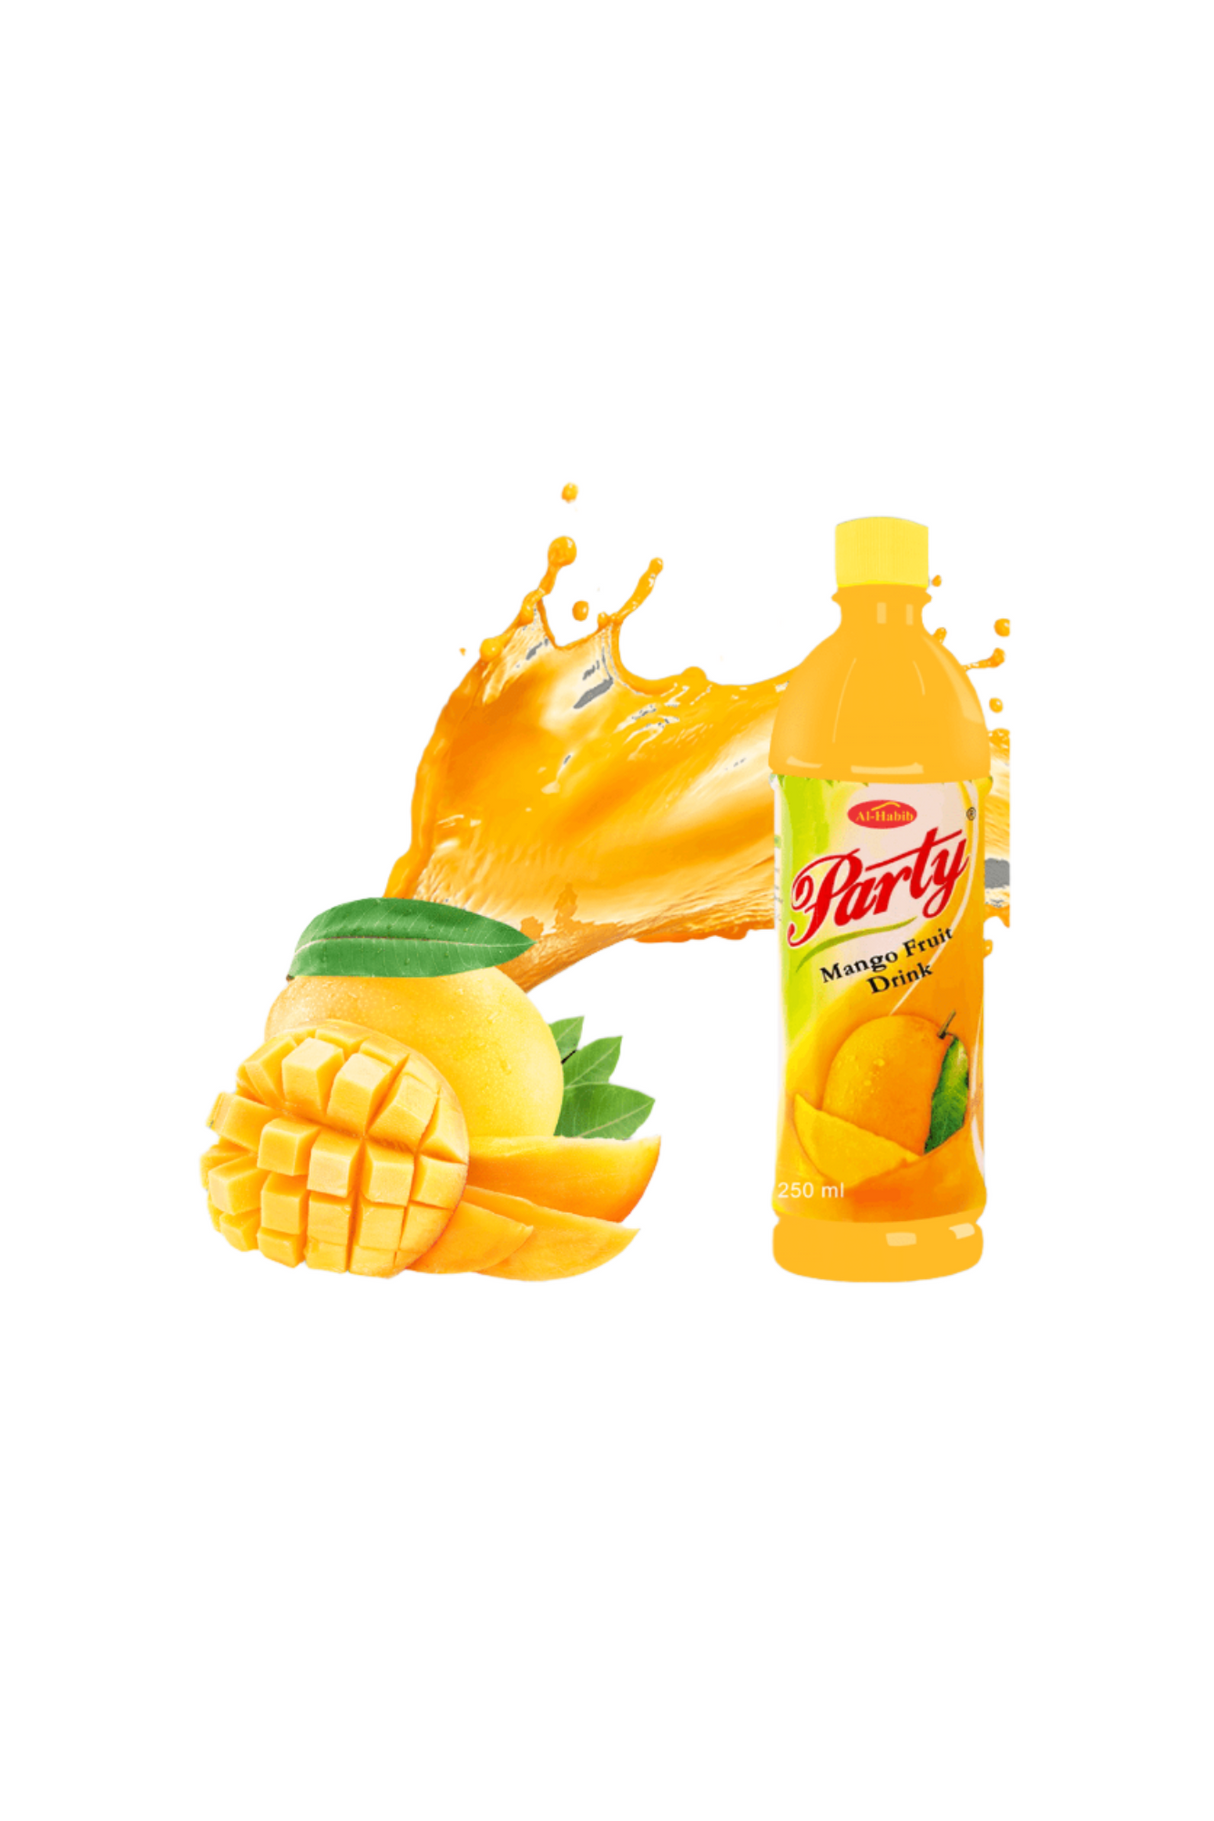 al-habib party juice mango 225ml